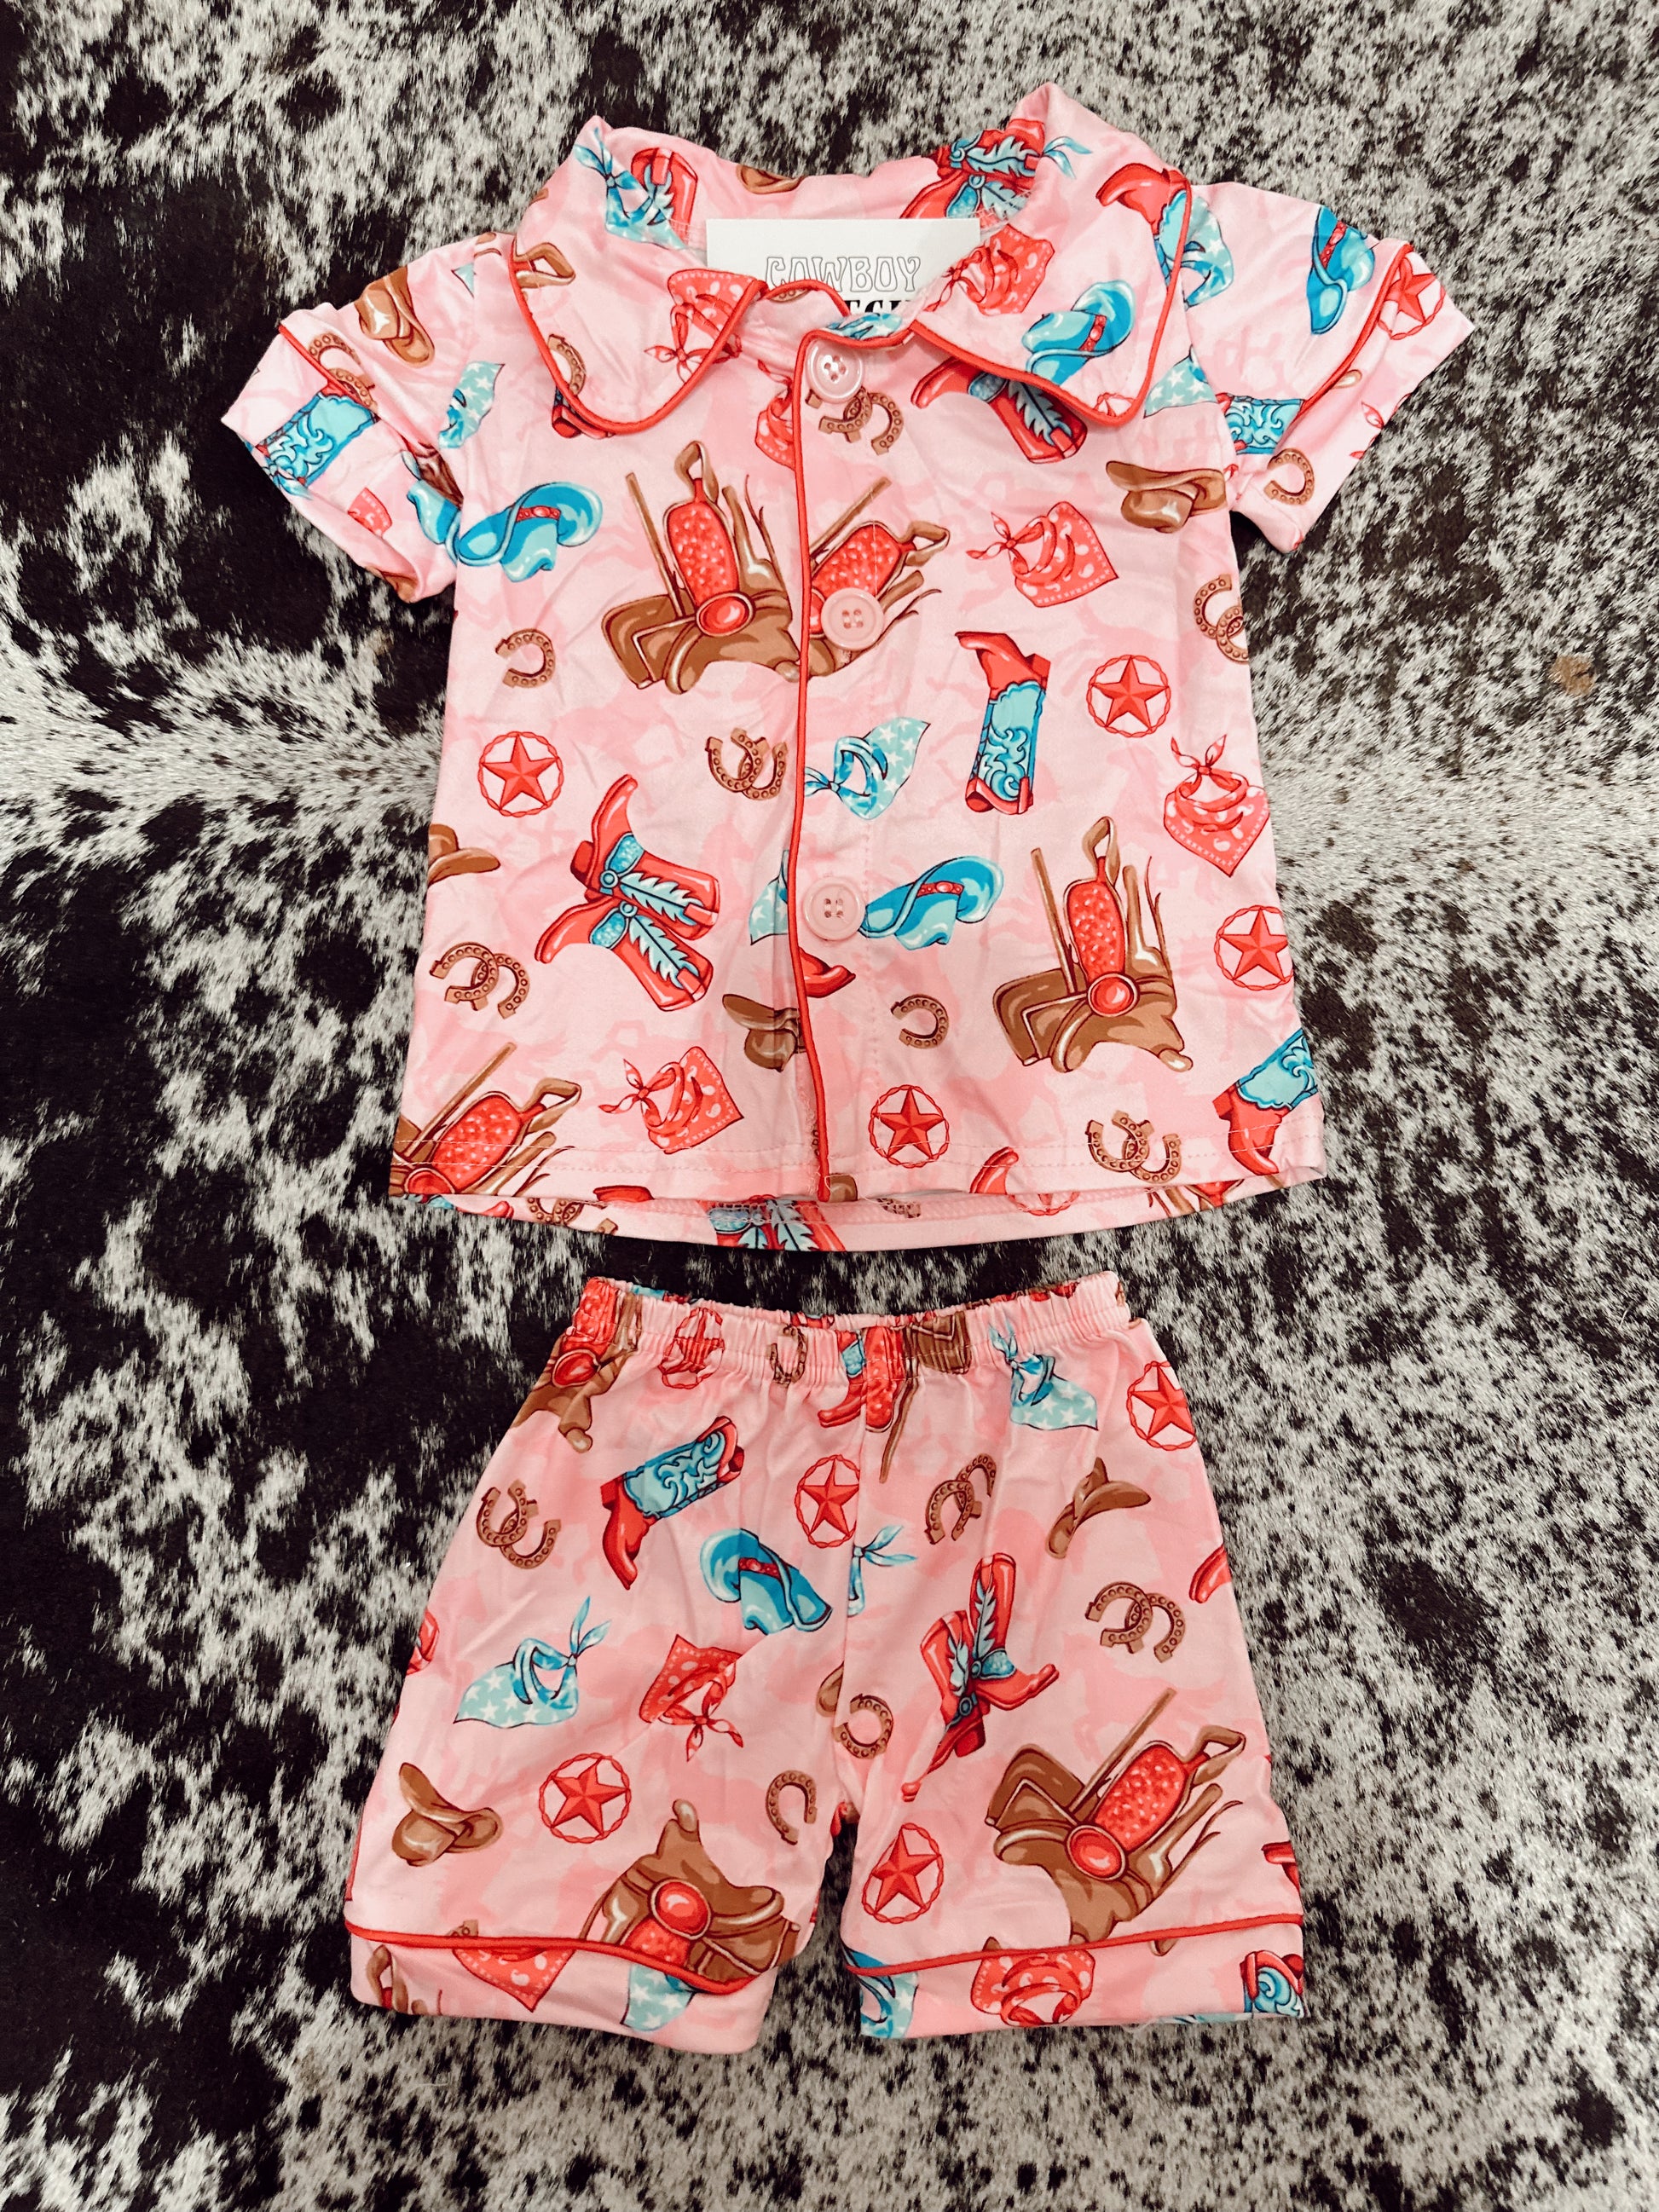 The Baby/Kids Western Pajamas